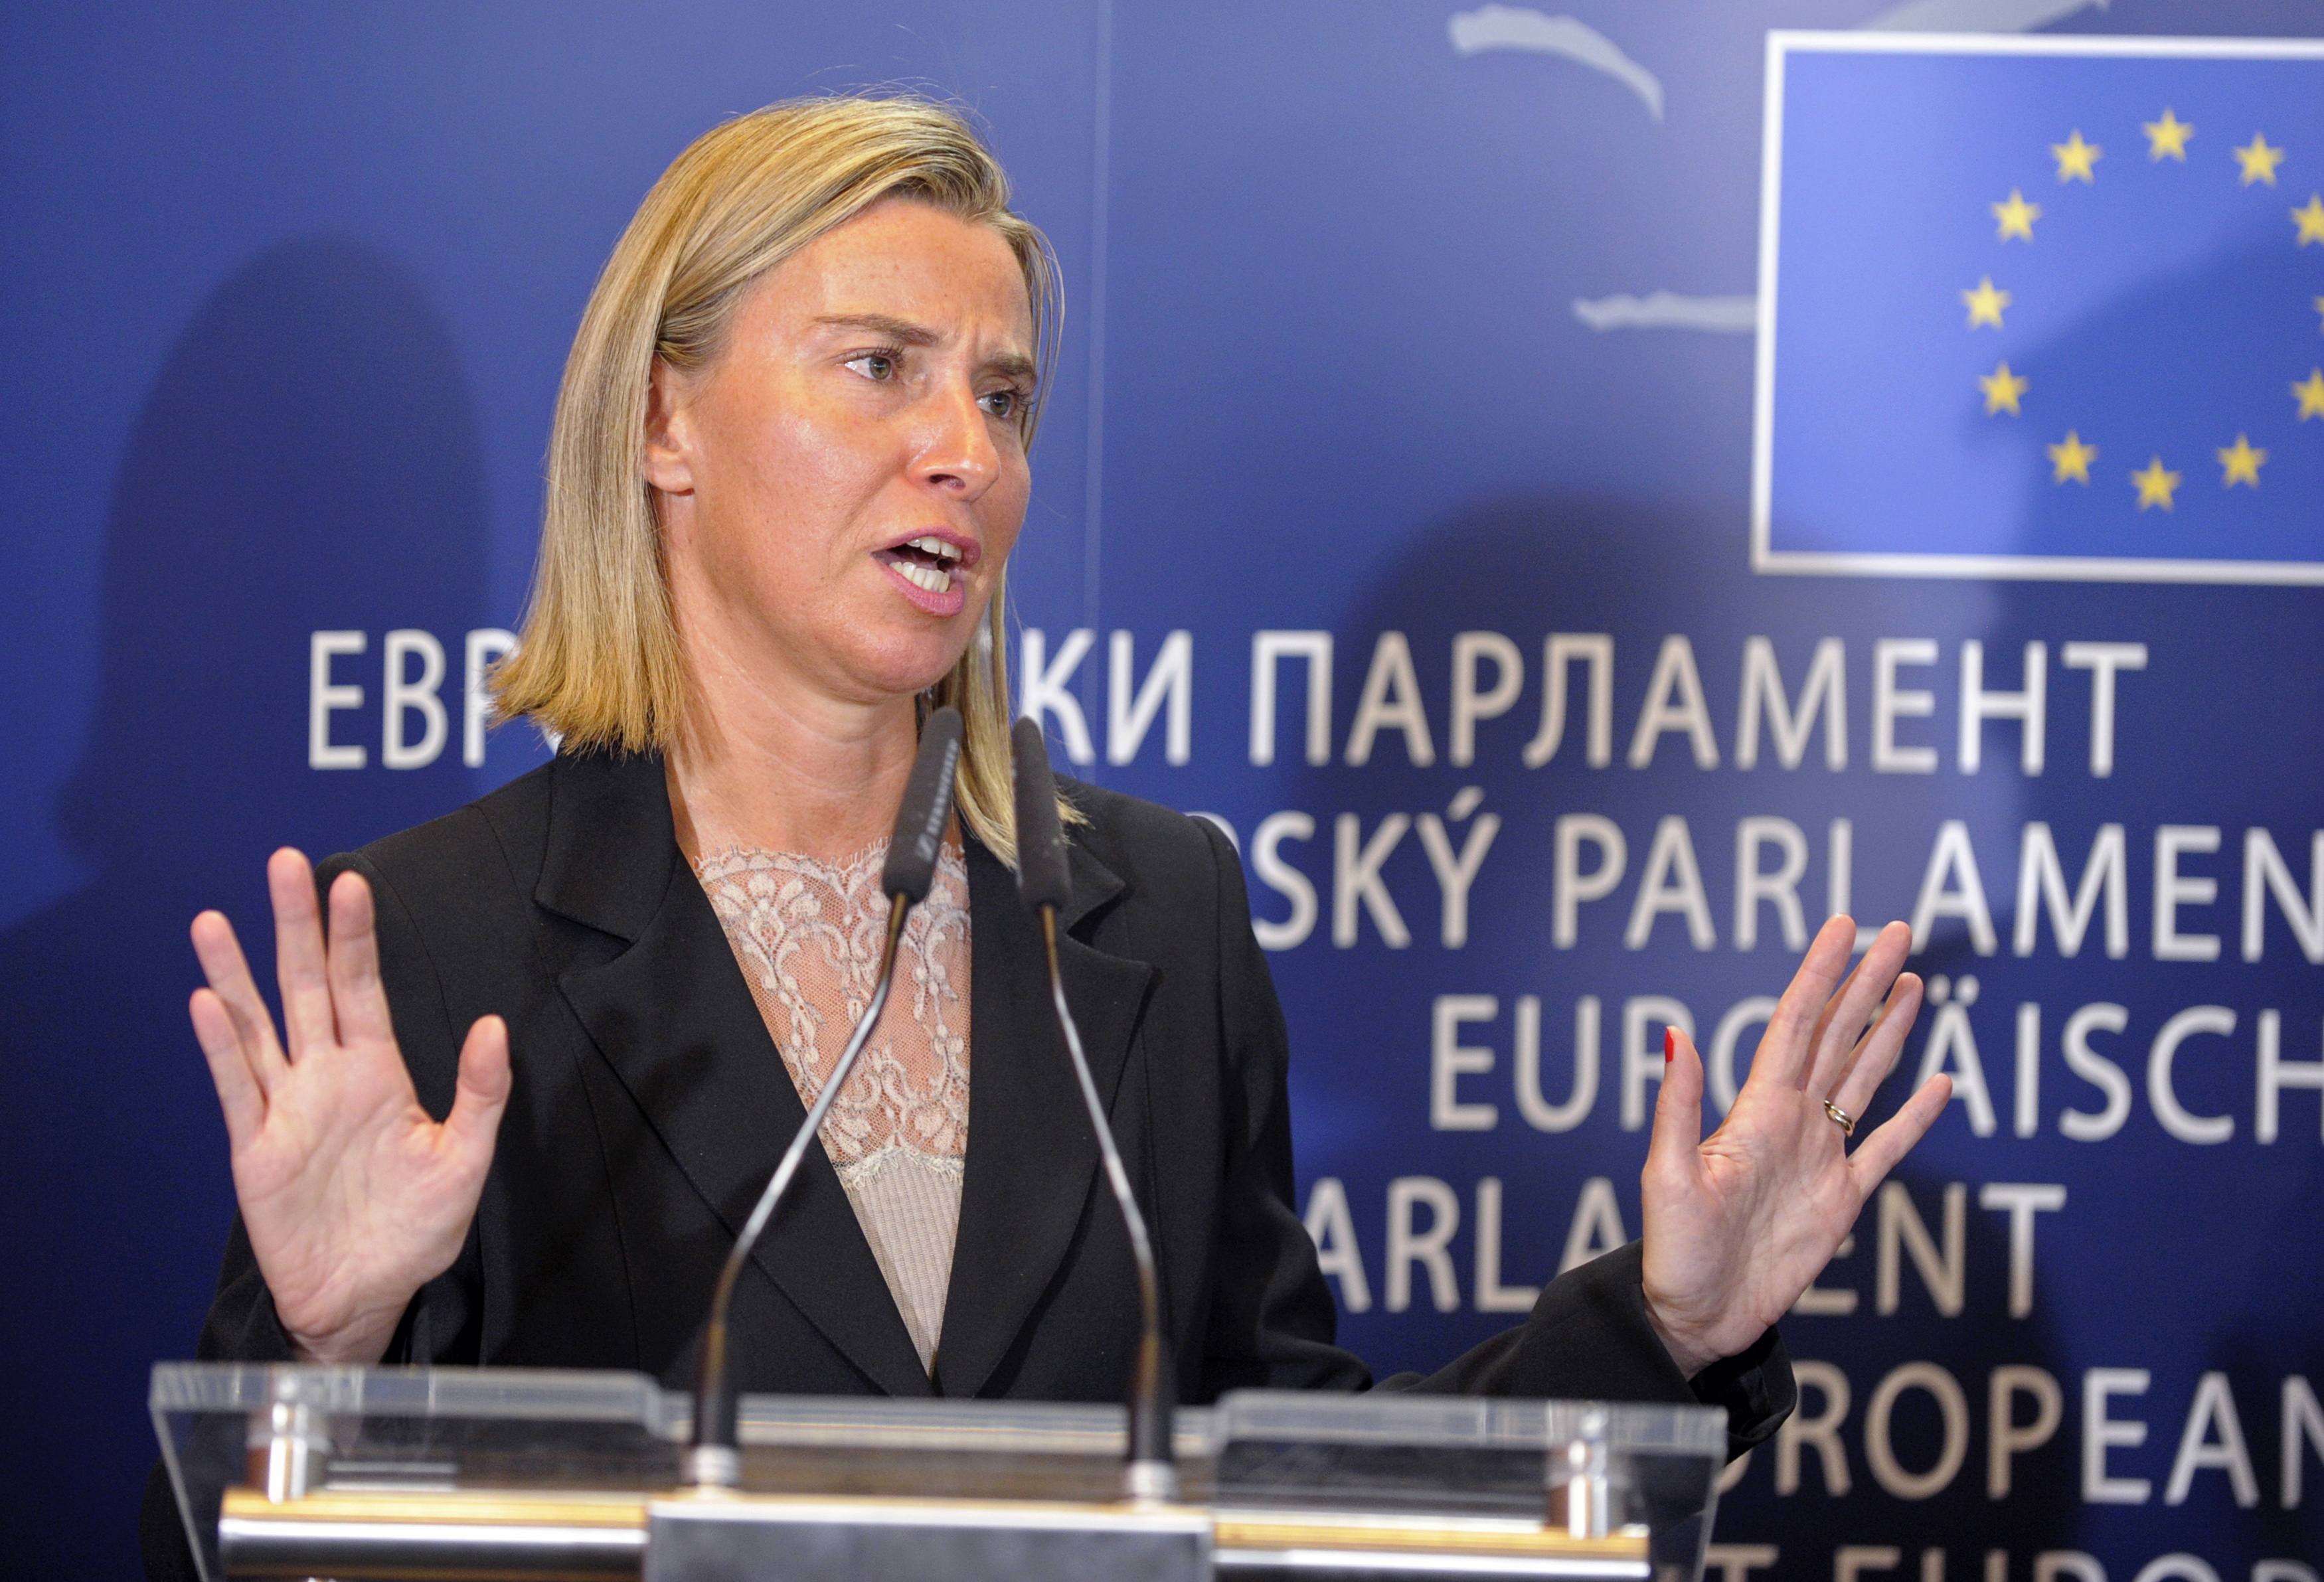 Μογκερίνι: Ελπίζουμε ότι το θέμα με τους Έλληνες στρατιωτικούς θα λυθεί σύντομα